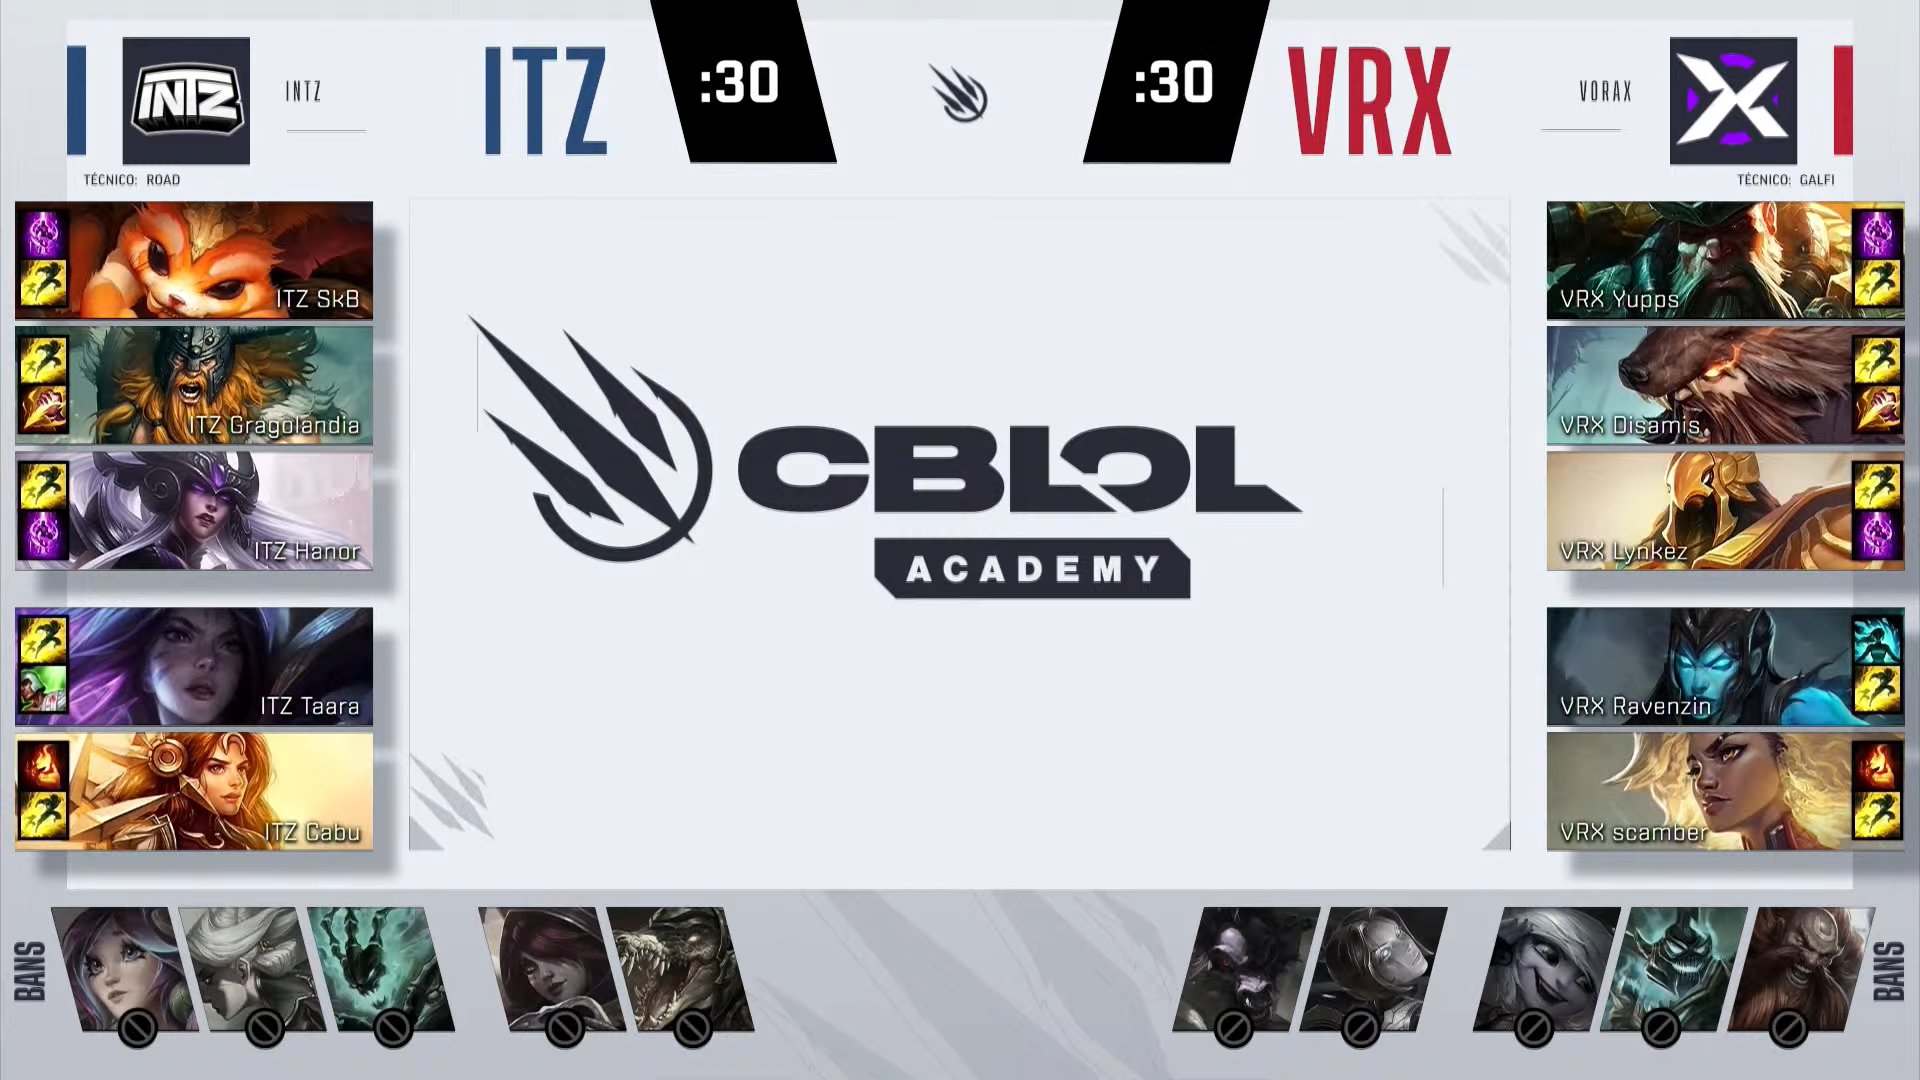 CBLOL Academy – Vorax vence e se mantém na zona de classificação!